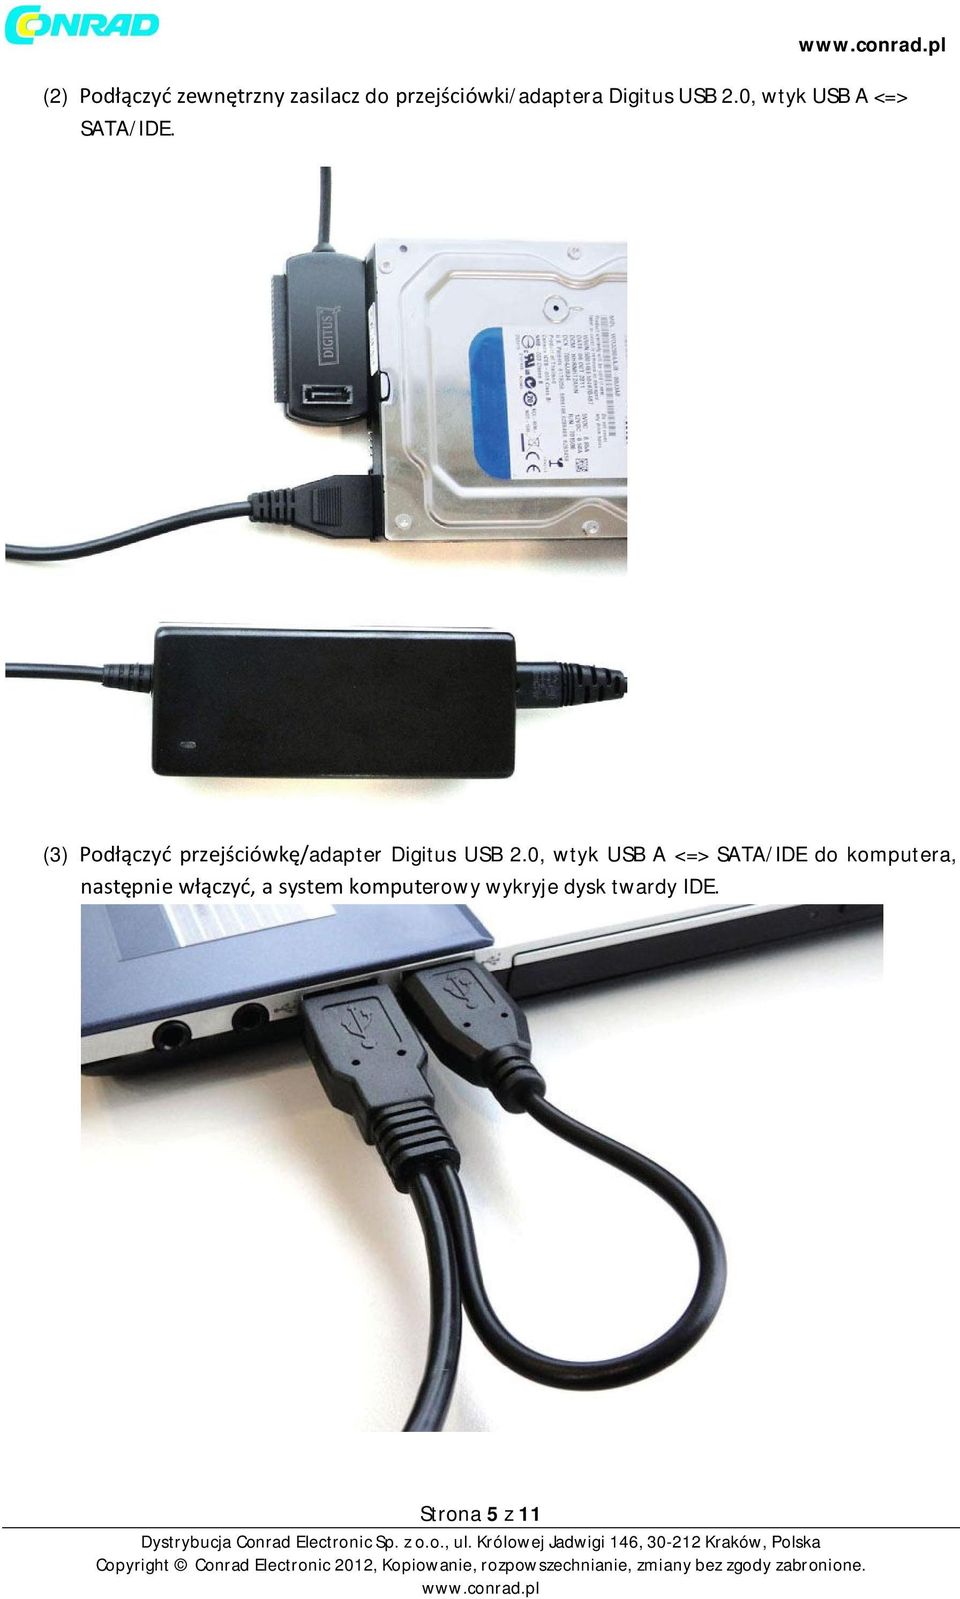 (3) Podłączyć przejściówkę/adapter Digitus USB 2.